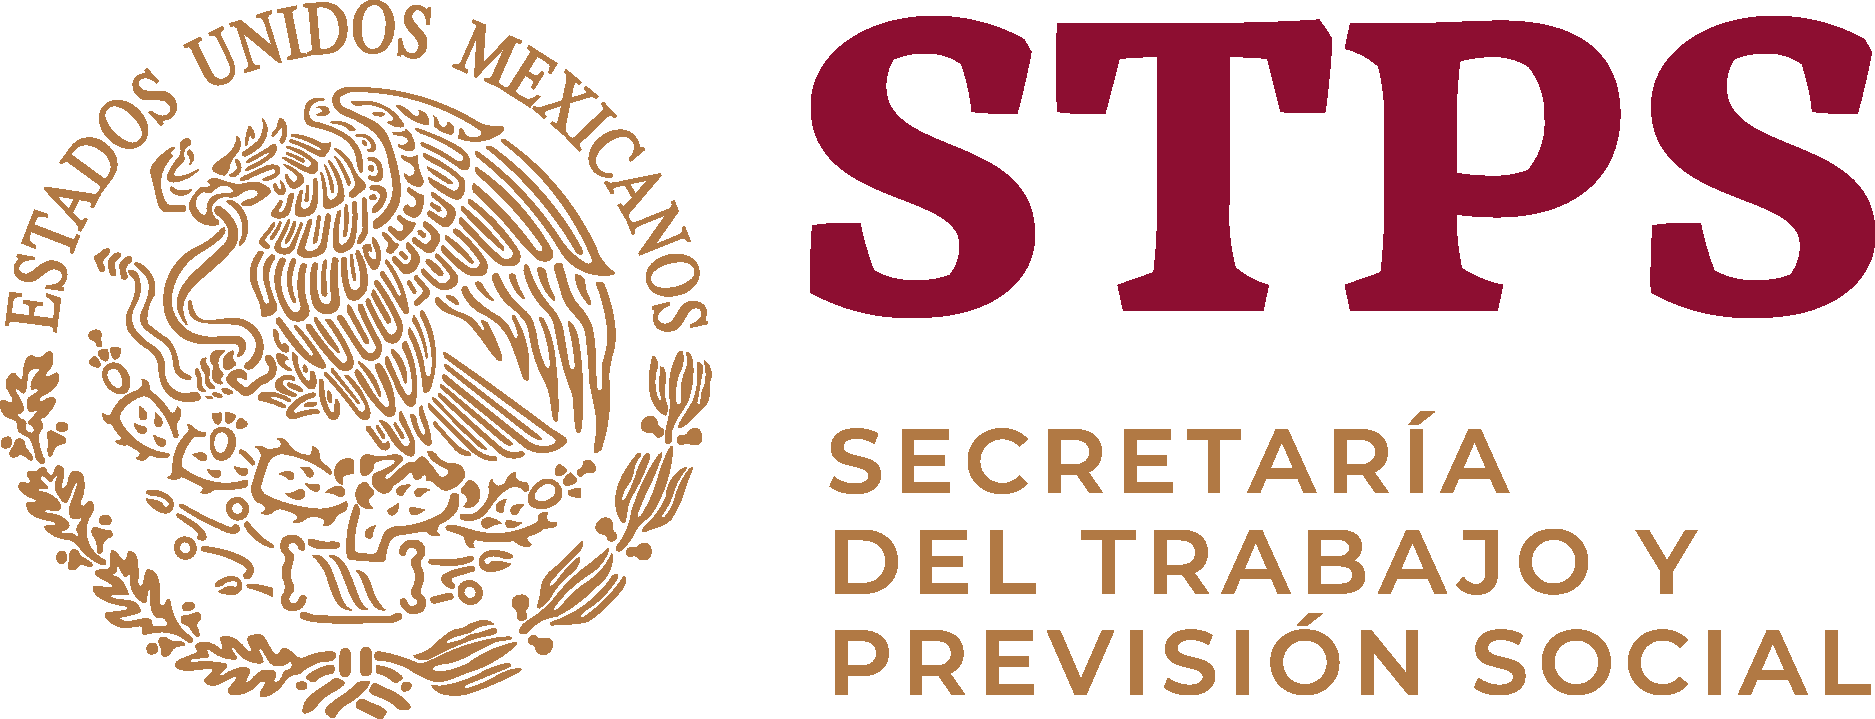 Secretaria Del Trabajo Y Prevision Social 2019 Logo Vector